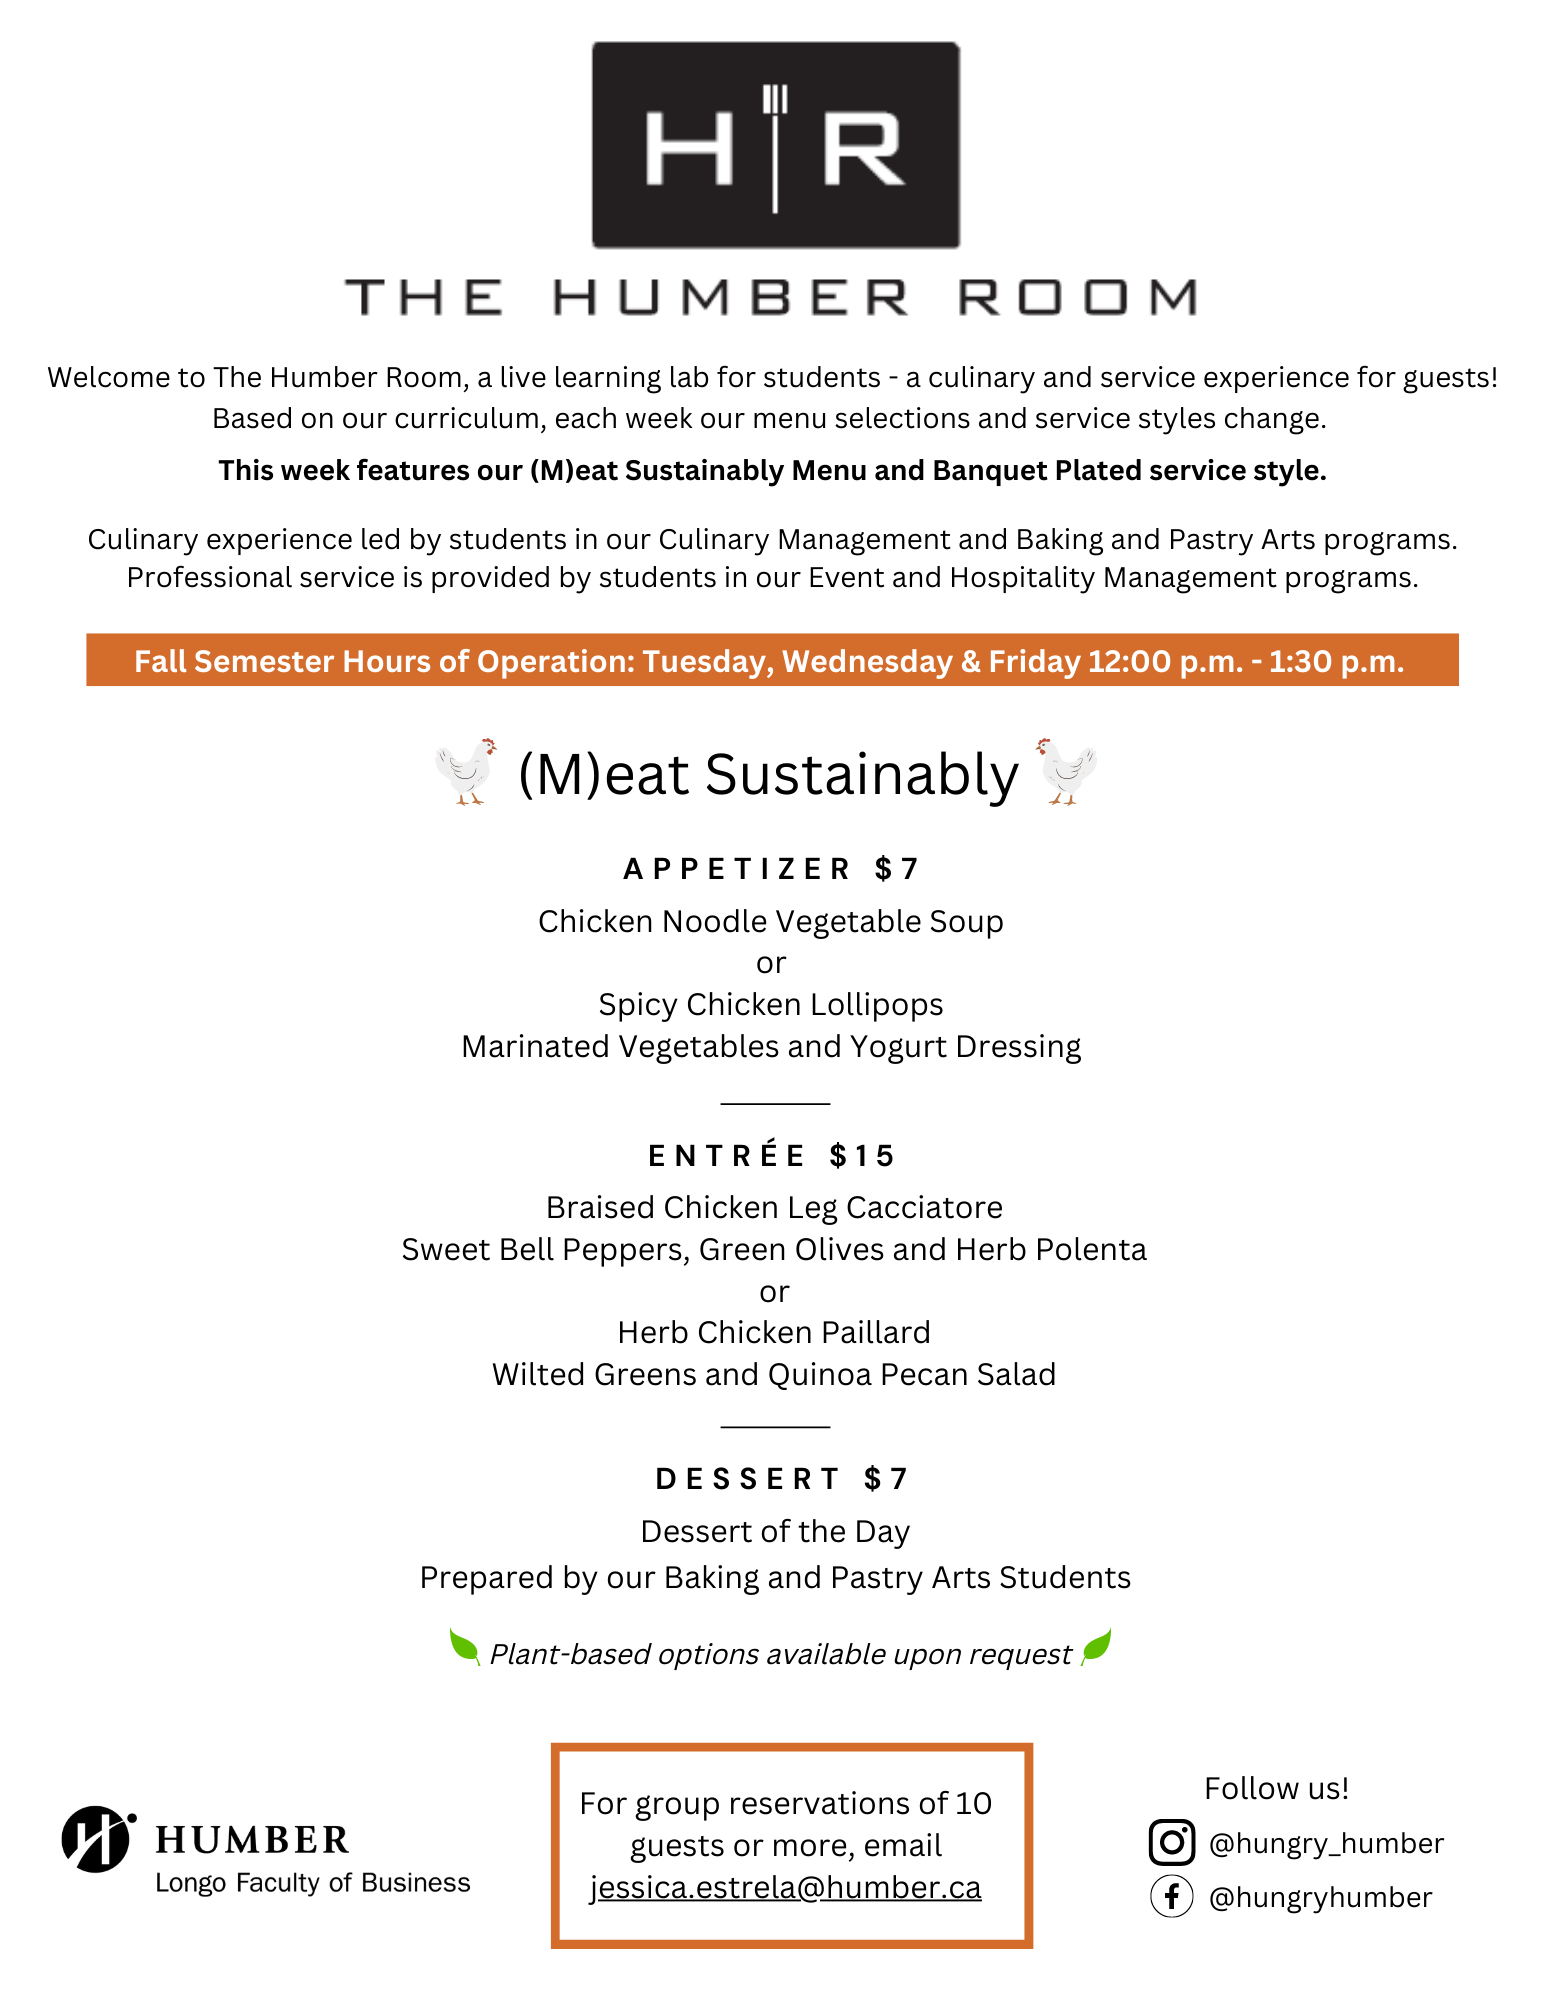 The Humber Room weekly menu